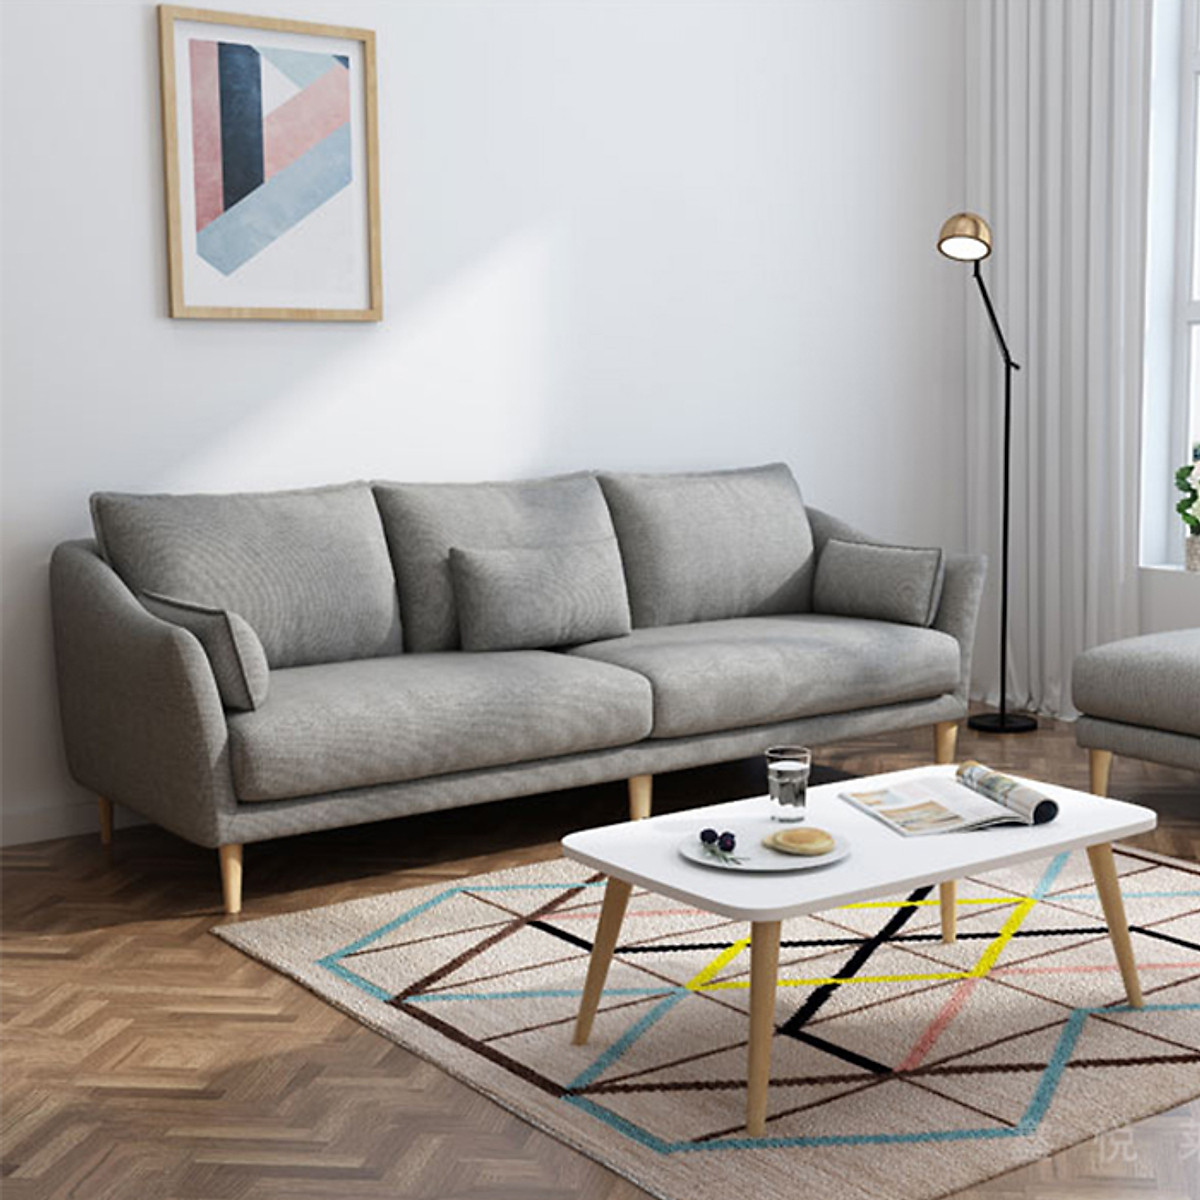 Đặc trưng của mẫu sofa phong cách Bắc Âu 